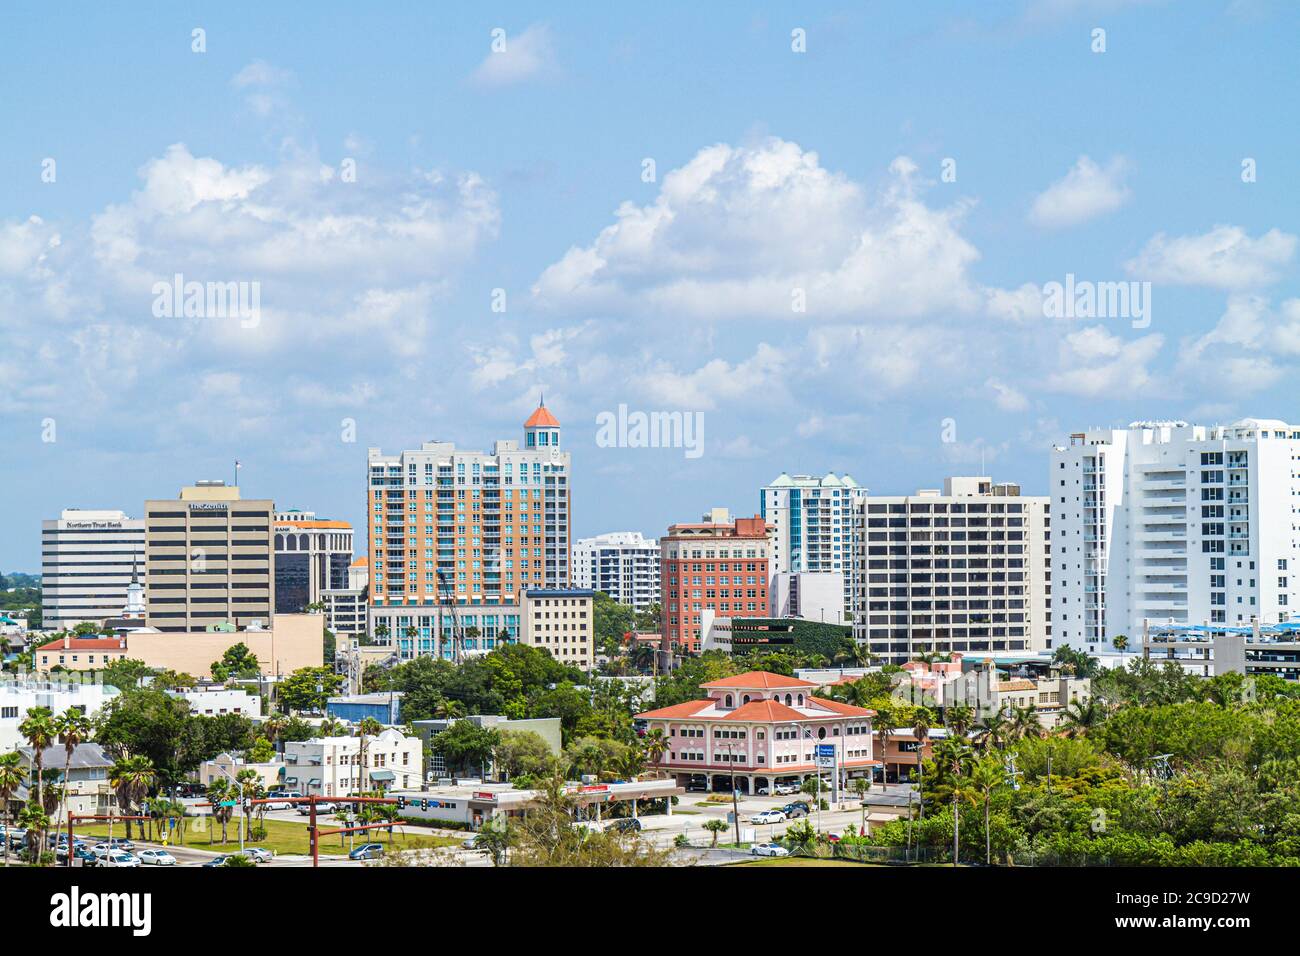 Sarasota Florida,centro,horizonte,edificios,horizonte urbano ciudad paisaje urbano,visitantes viajes recorrido turístico turismo puntos de referencia cultura cultural, Foto de stock